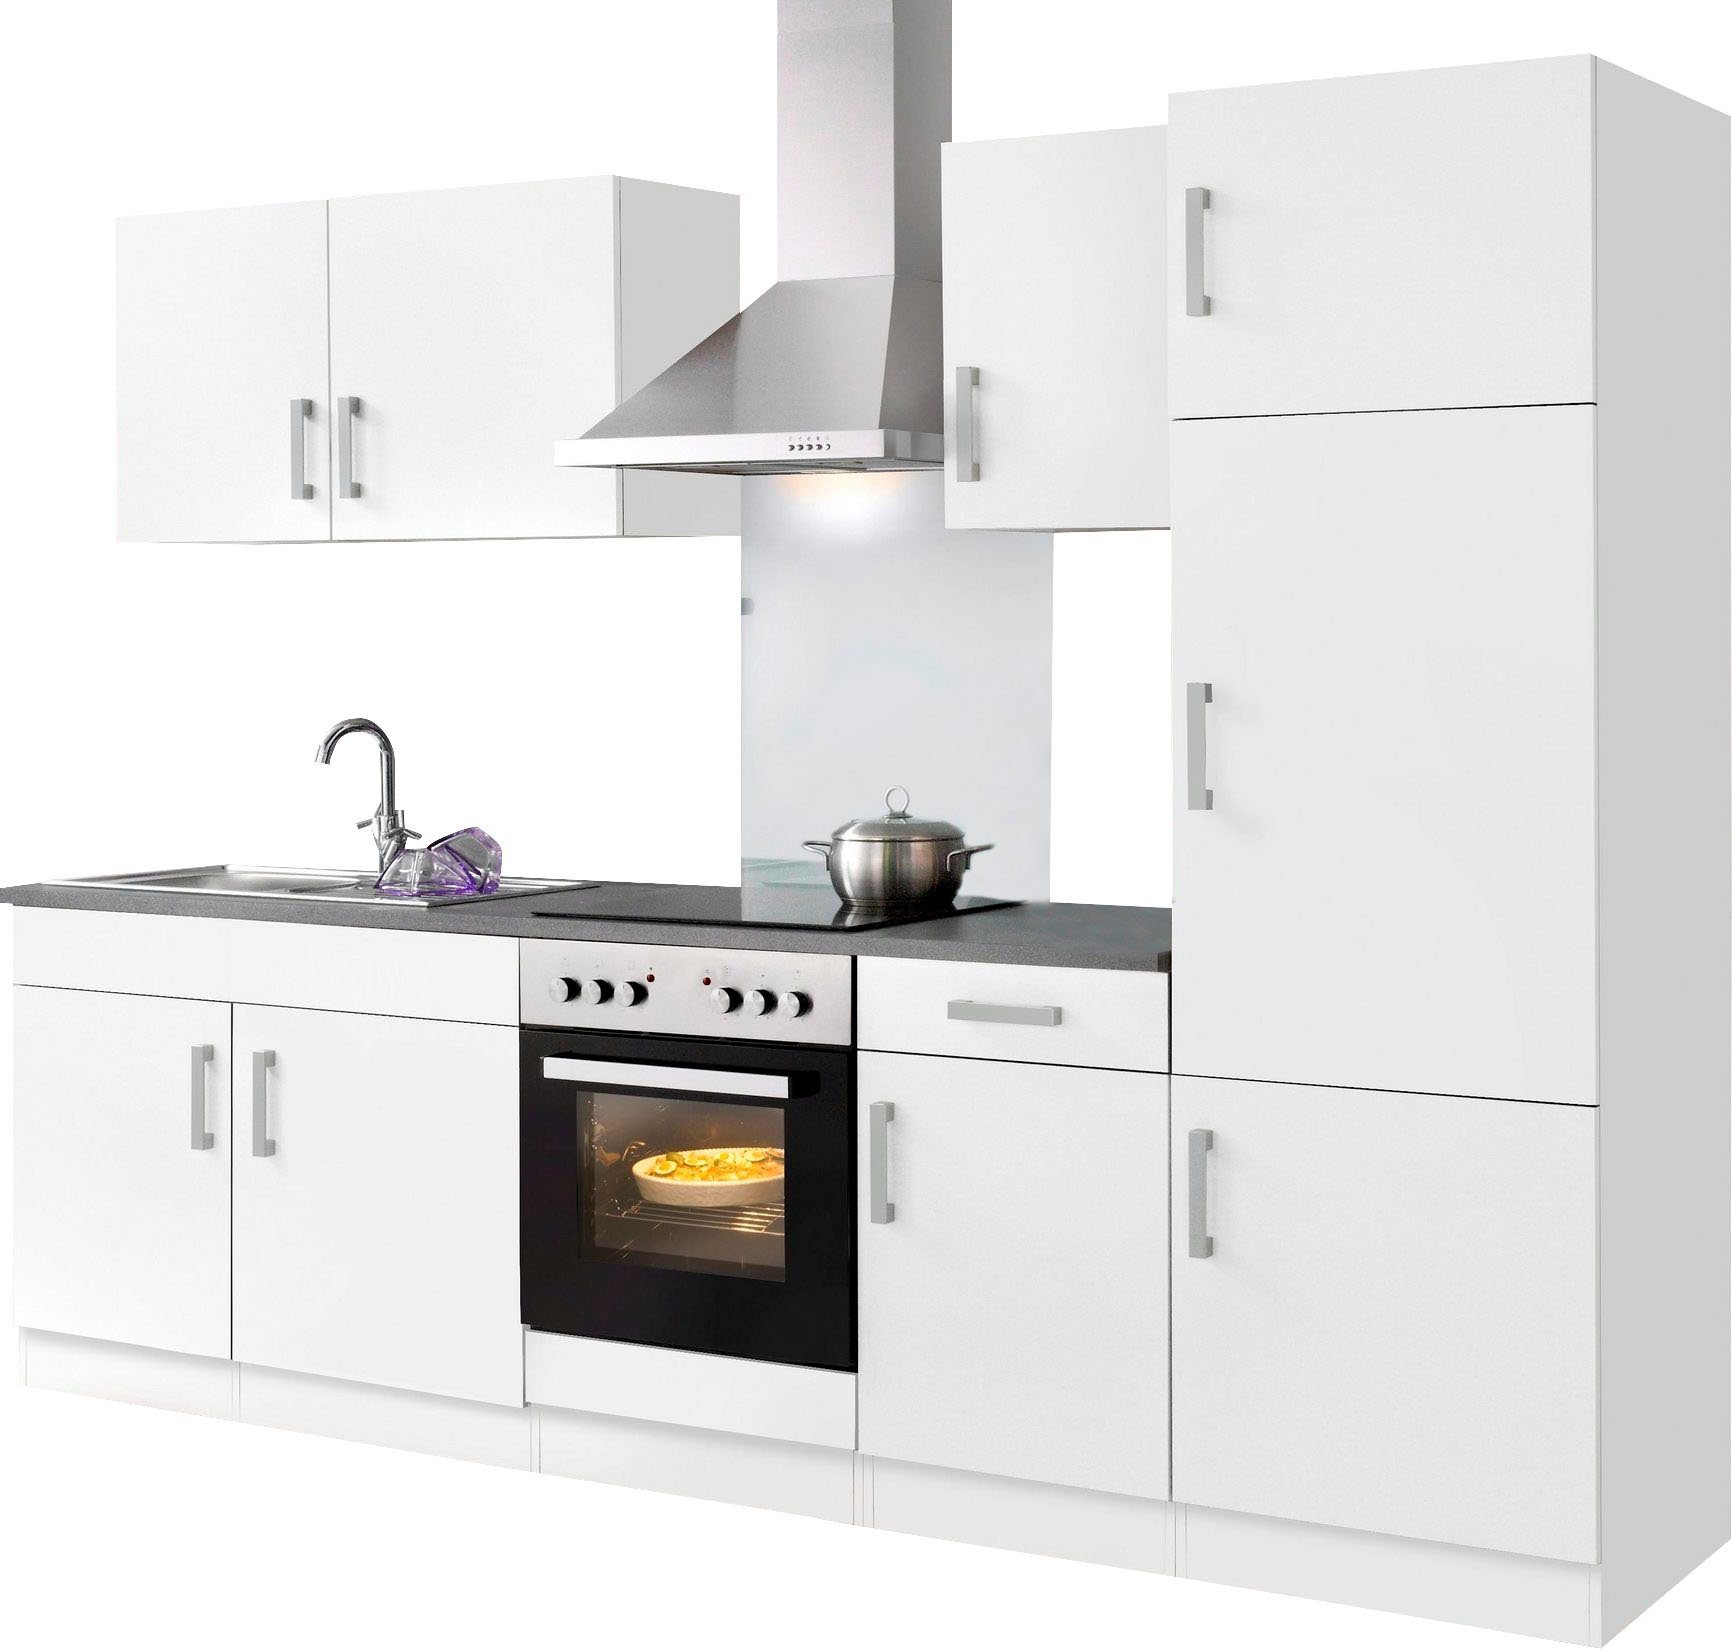 HELD MÖBEL Küchenzeile Toronto, weiß/anthrazit Breite E-Geräten, 270 cm mit